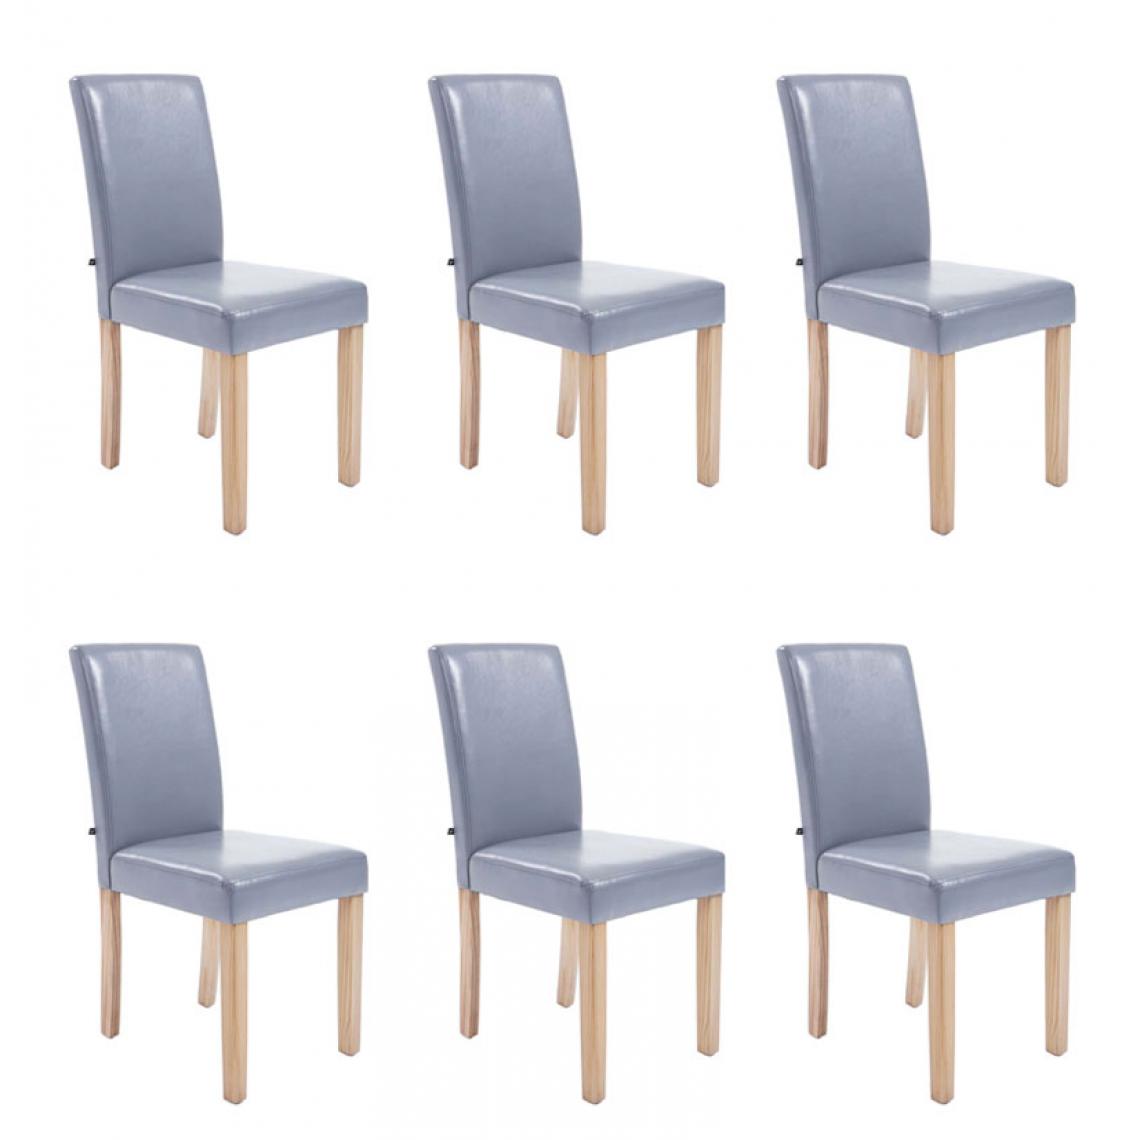 Icaverne - Esthetique Lot de 6 chaises de salle à manger famille Rabat natura couleur gris - Chaises